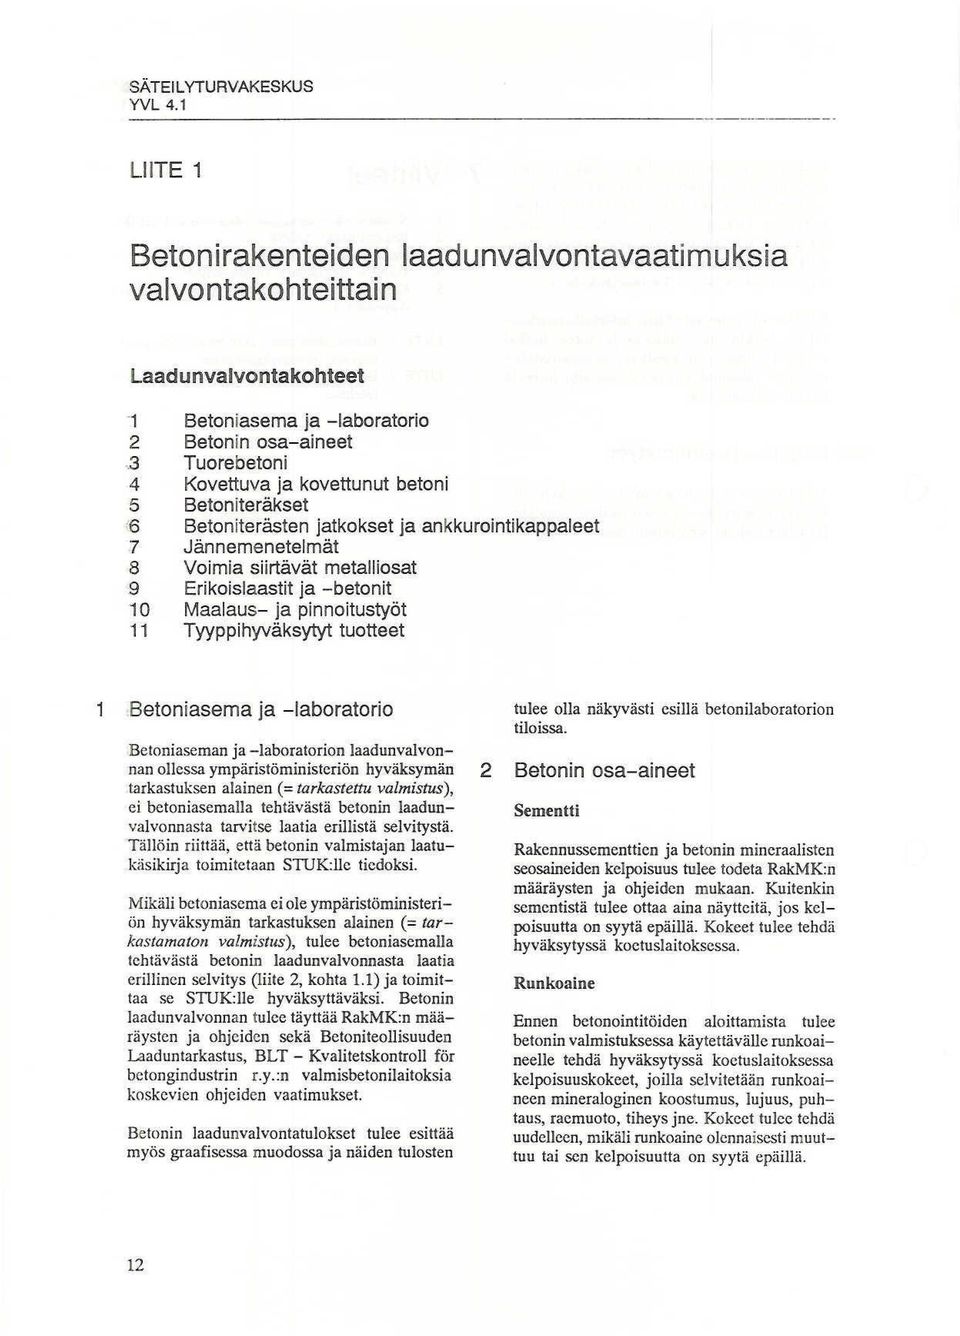 Tyyppihyväksytytuotteet 1 8etoniasema ja -laboratorio Beloniaseman ja ~laboratorion laadunvalvonnan ollessa ympäristöministeriön hyväksymän 2 tarkastuksen alainen (:::tarkastettu valmistus), ei